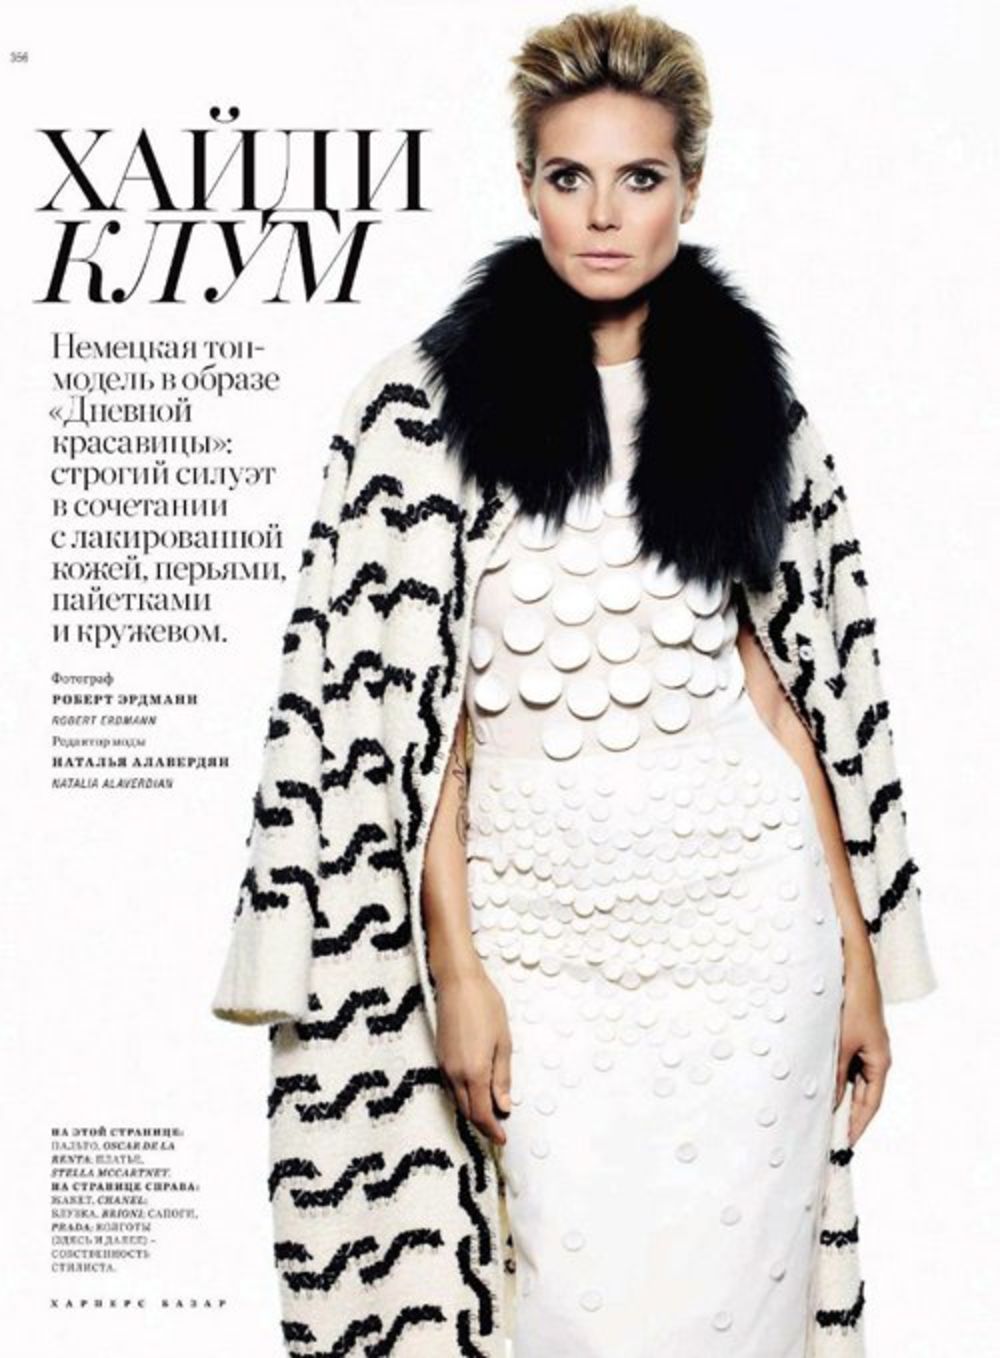 Slavna nemački top model Hajdi Klum osvanula je na naslovnici najnovijeg broja ruskog izdanja magazina Harper’s Bazaar gde je ova tridesetosmogodišnja diva, odevena u krzno i kožu, pozirala za modni editorijal u jednom izuzetno elegantnom i glamuroznom izdanju